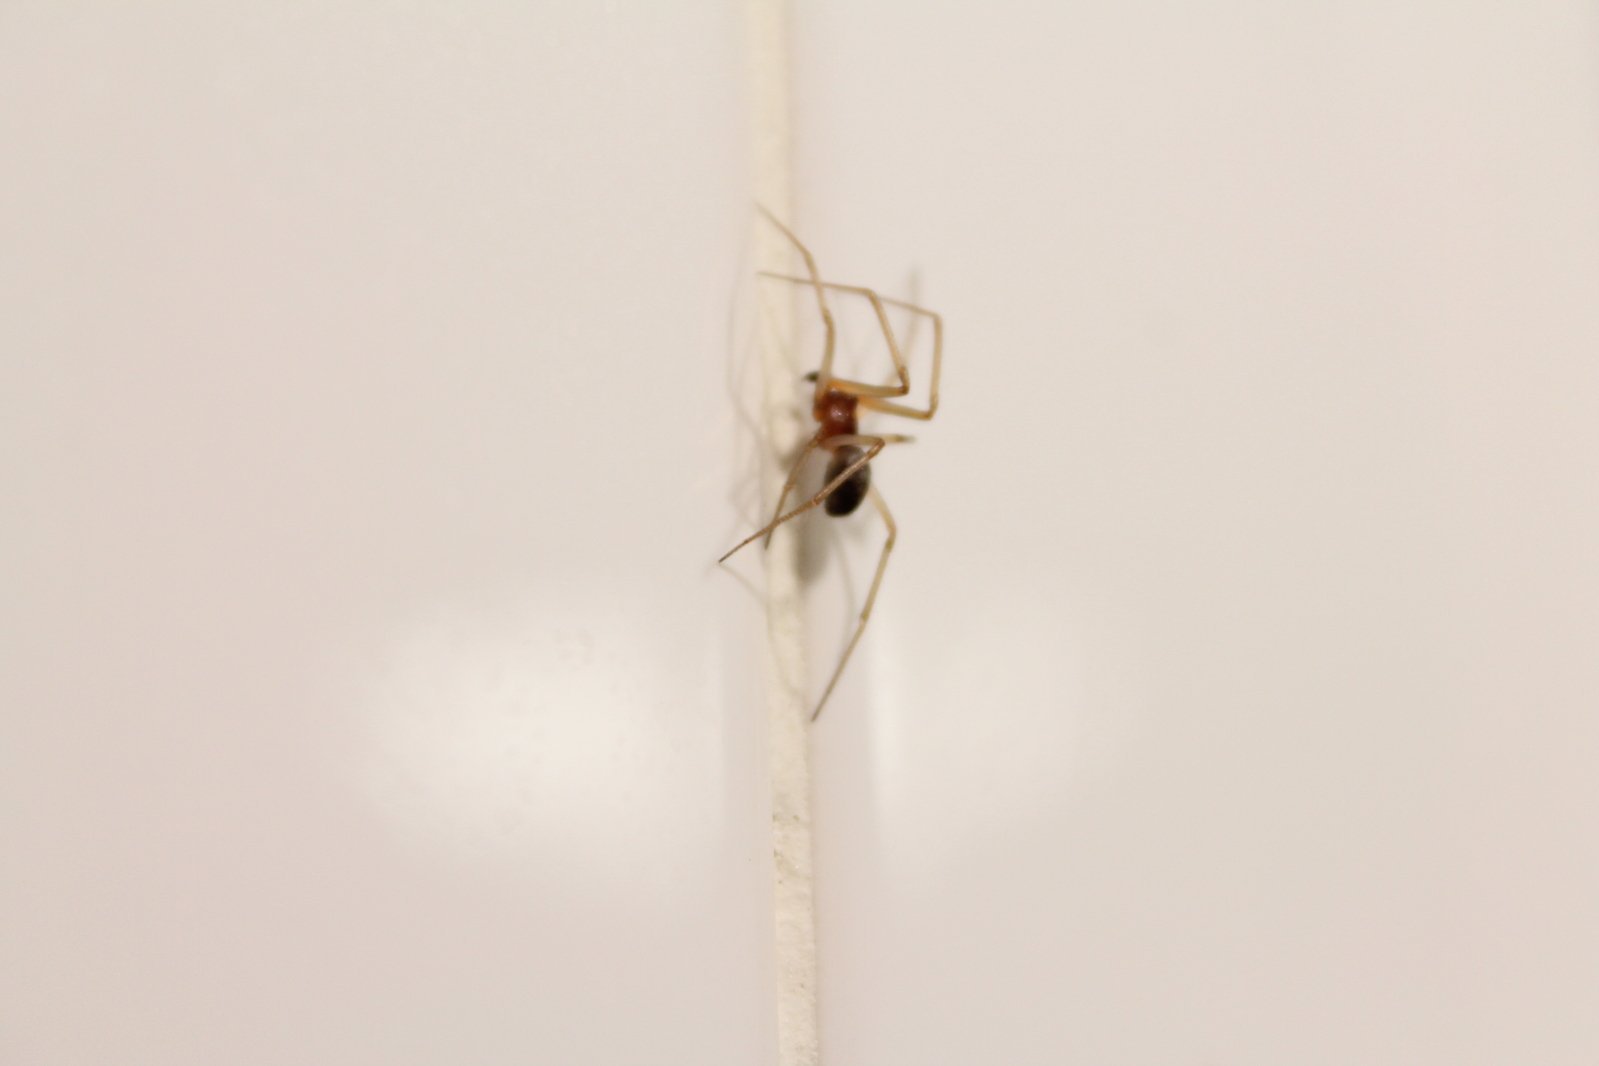 паук сидит на стене